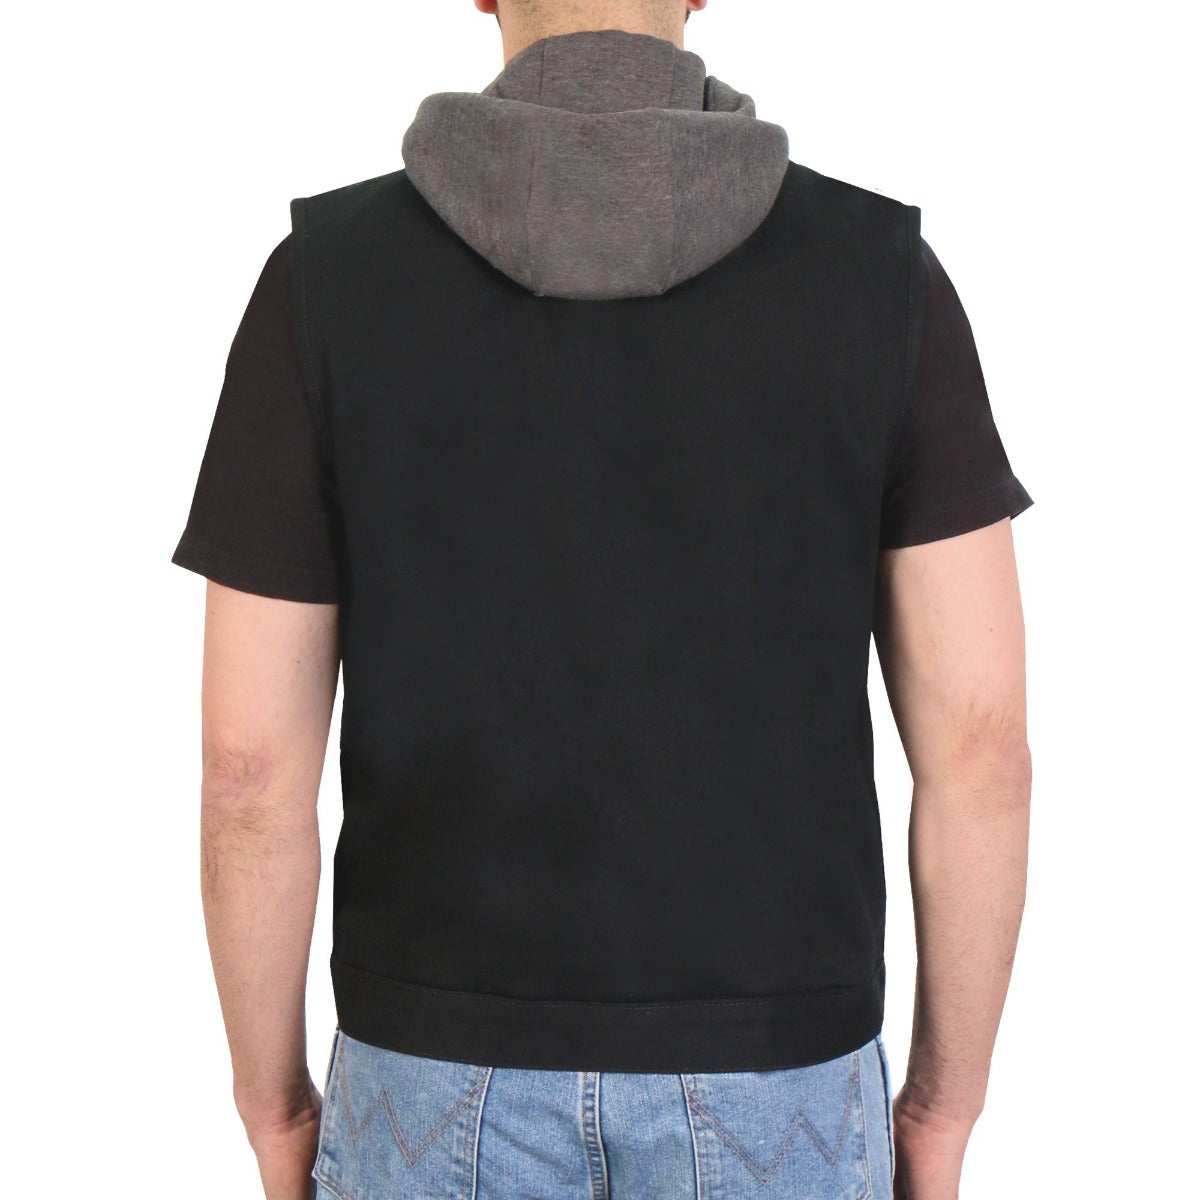 Hot Leathers Men's Black Denim Hooded Conceal Carry Vest